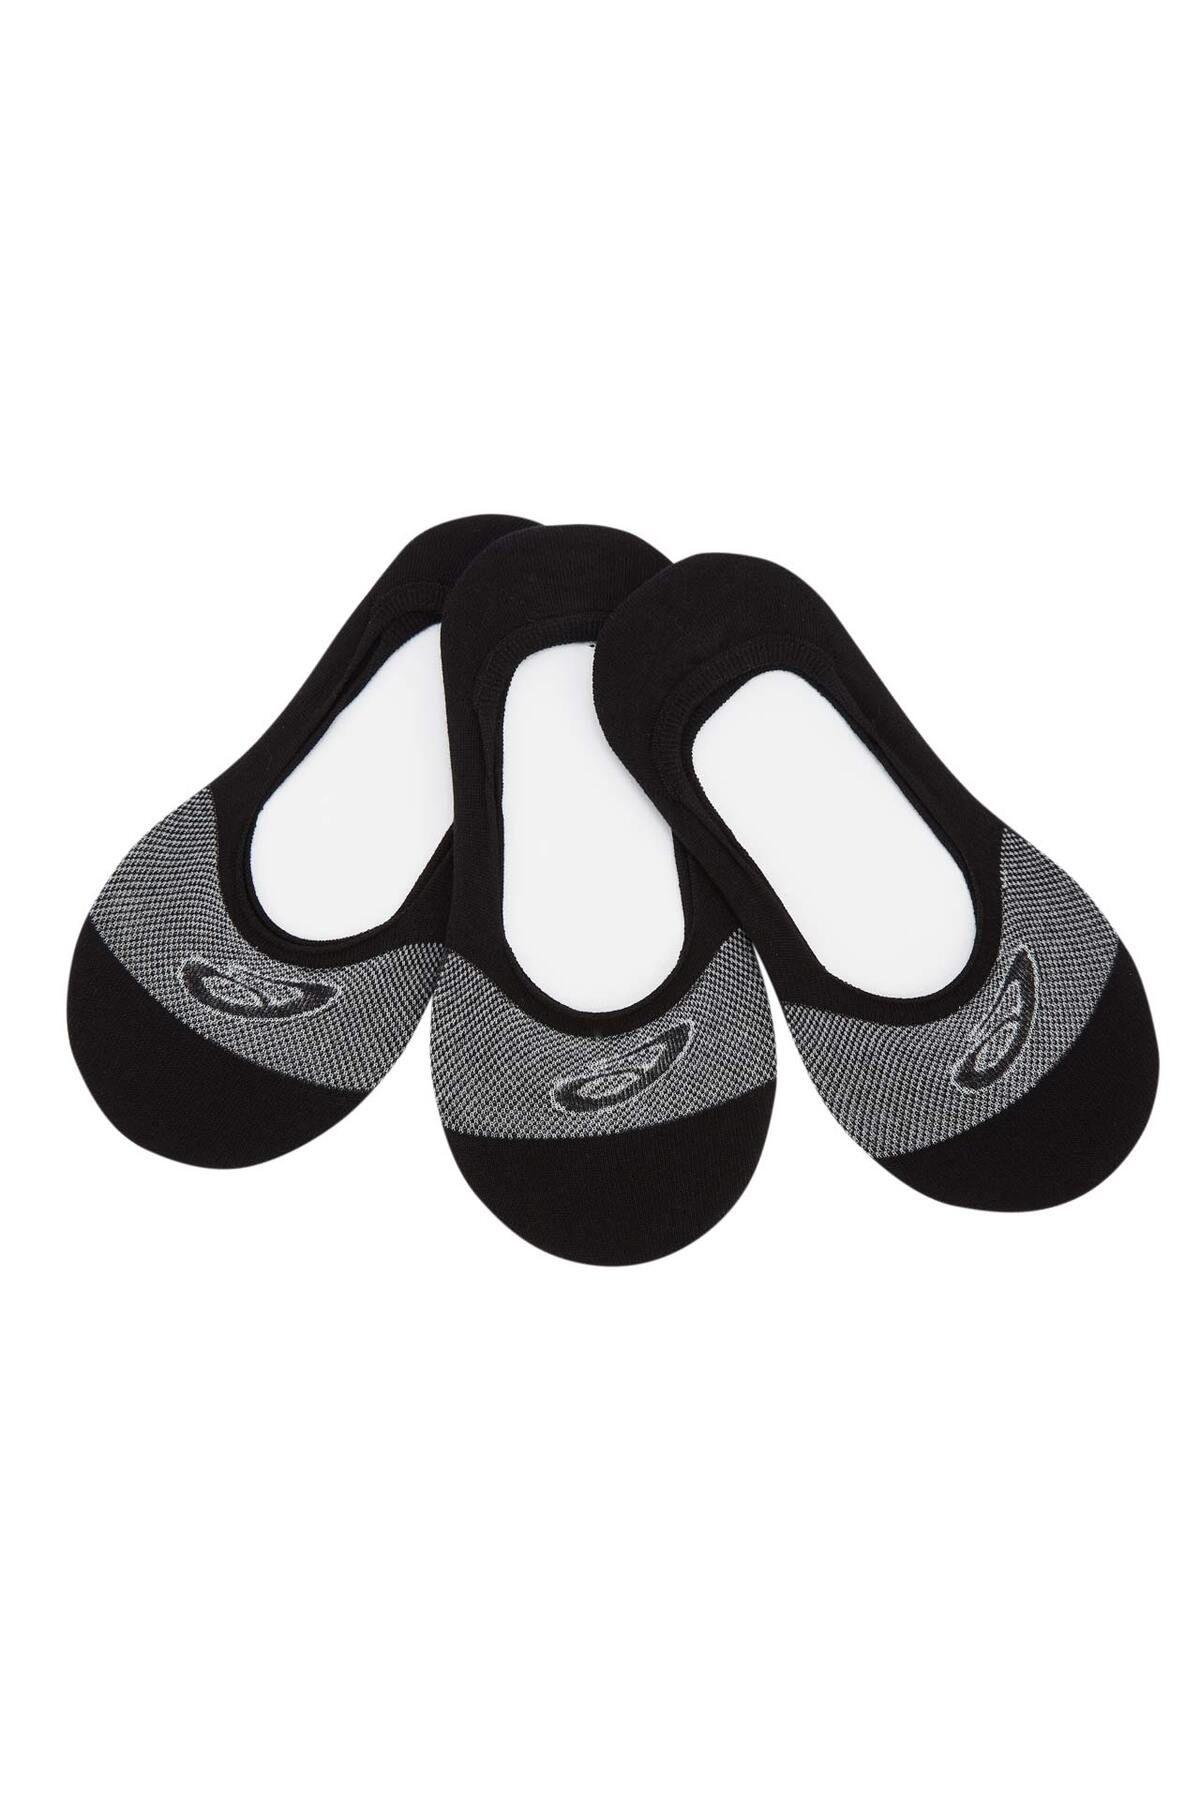 Asics 3ppk Secret Sock Unisex Siyah Çorap 3033a394-001 3033A394-001